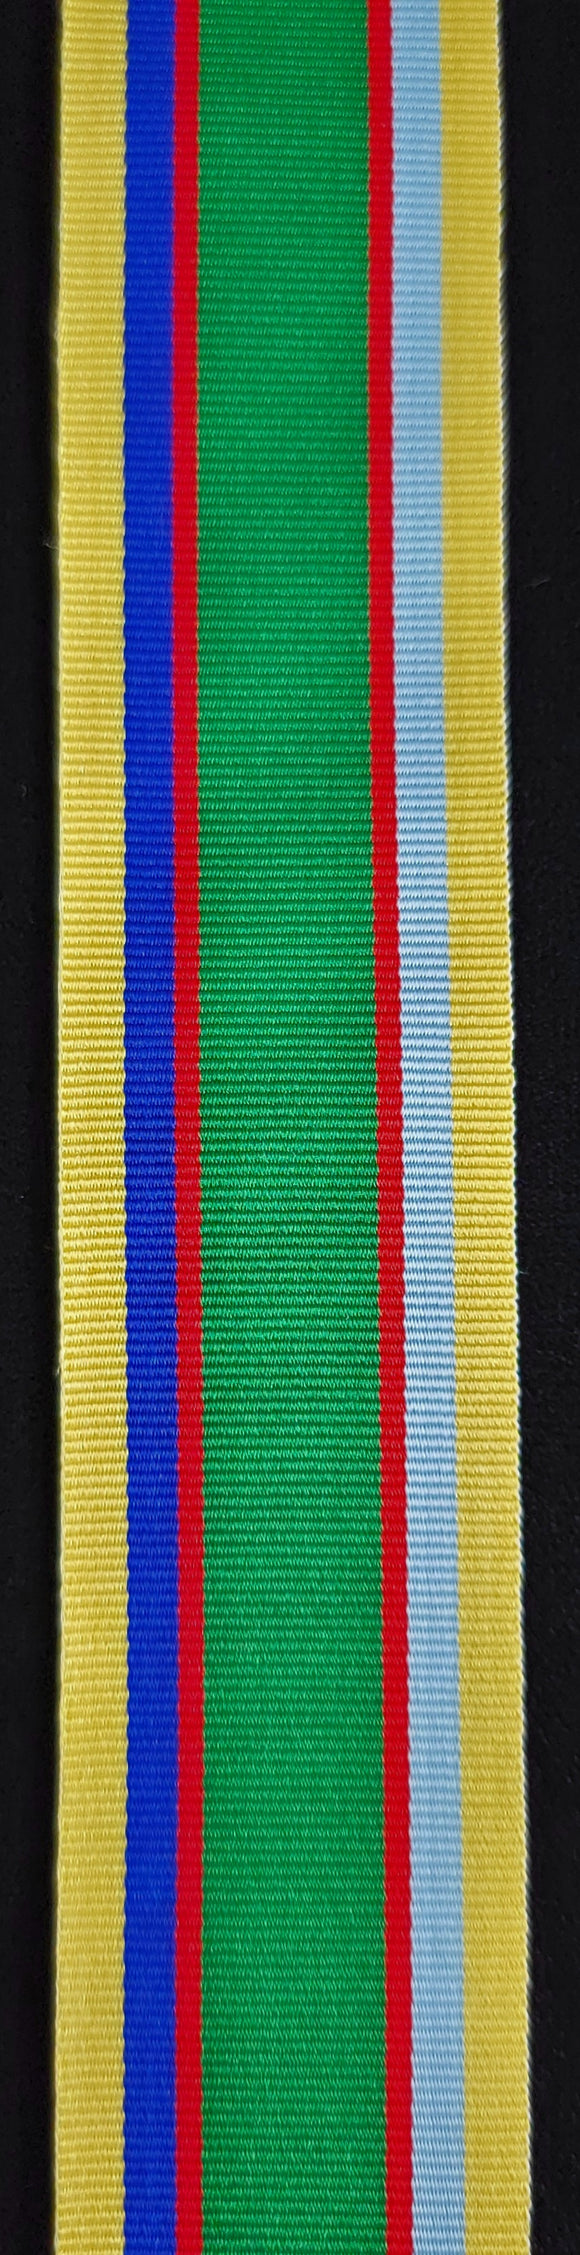 Ribbon, UK Cadet Medal